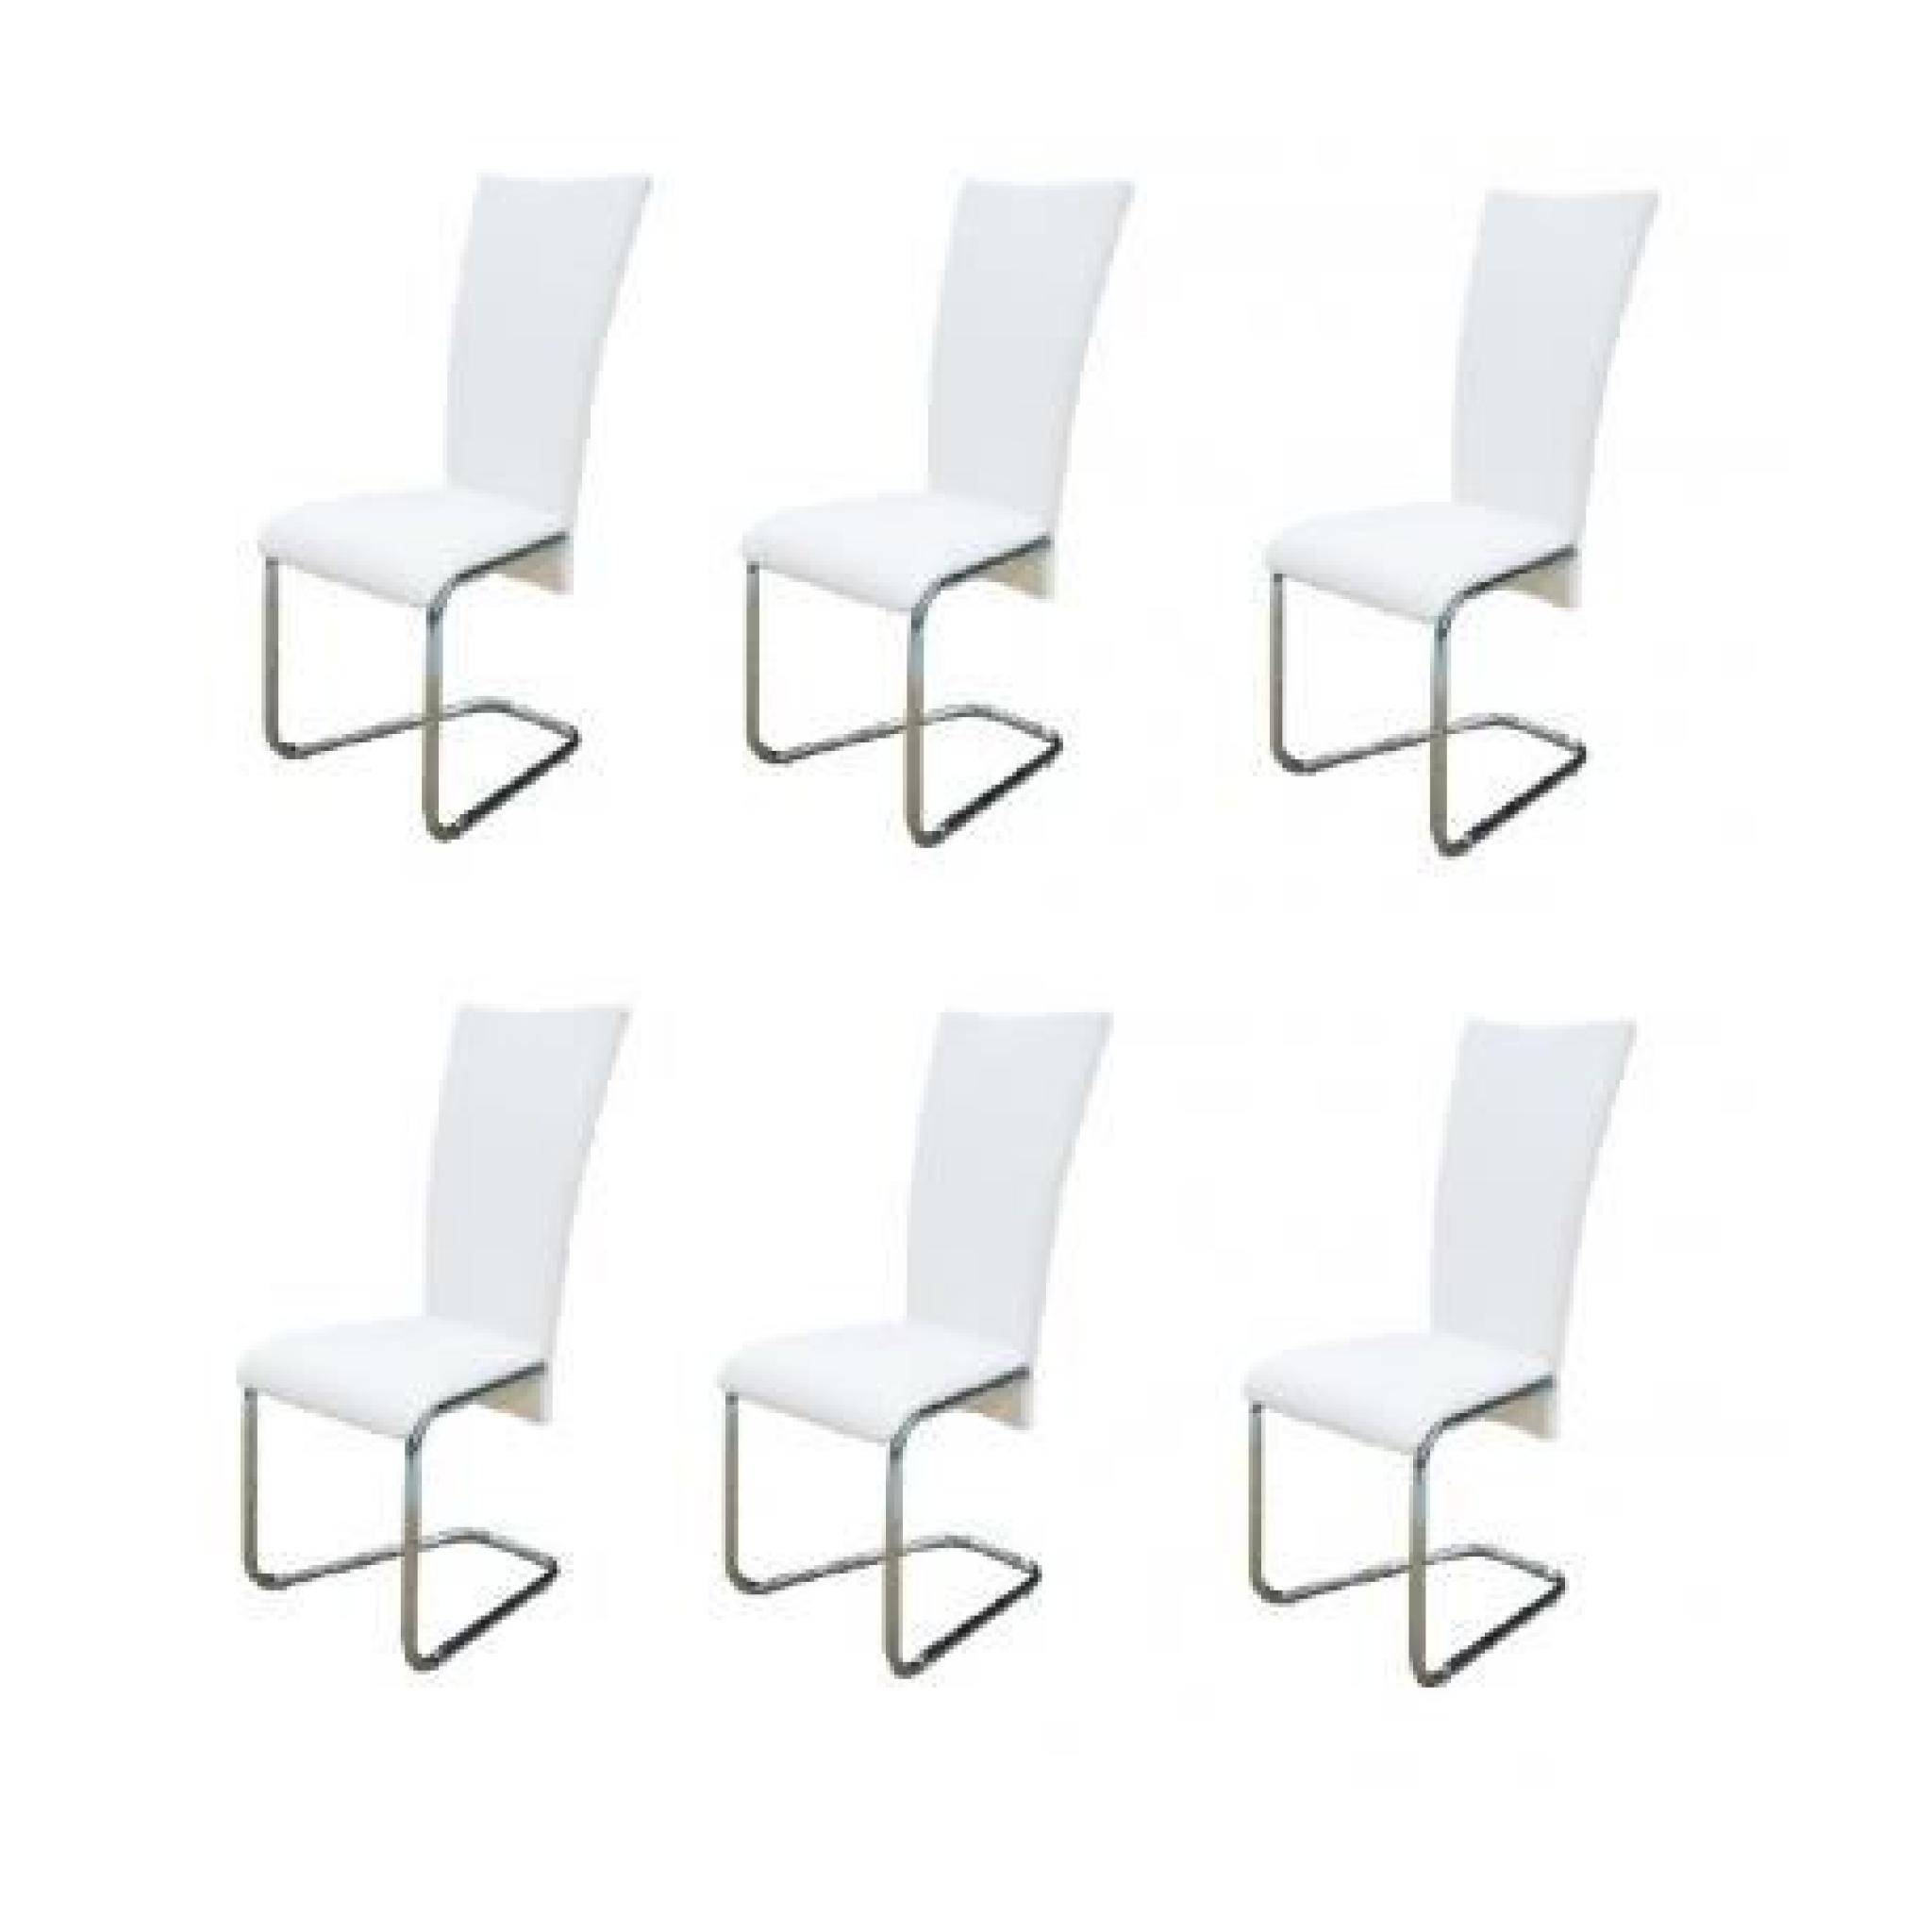 Lot de 6 Chaise design métal blanche Stylashop pas cher